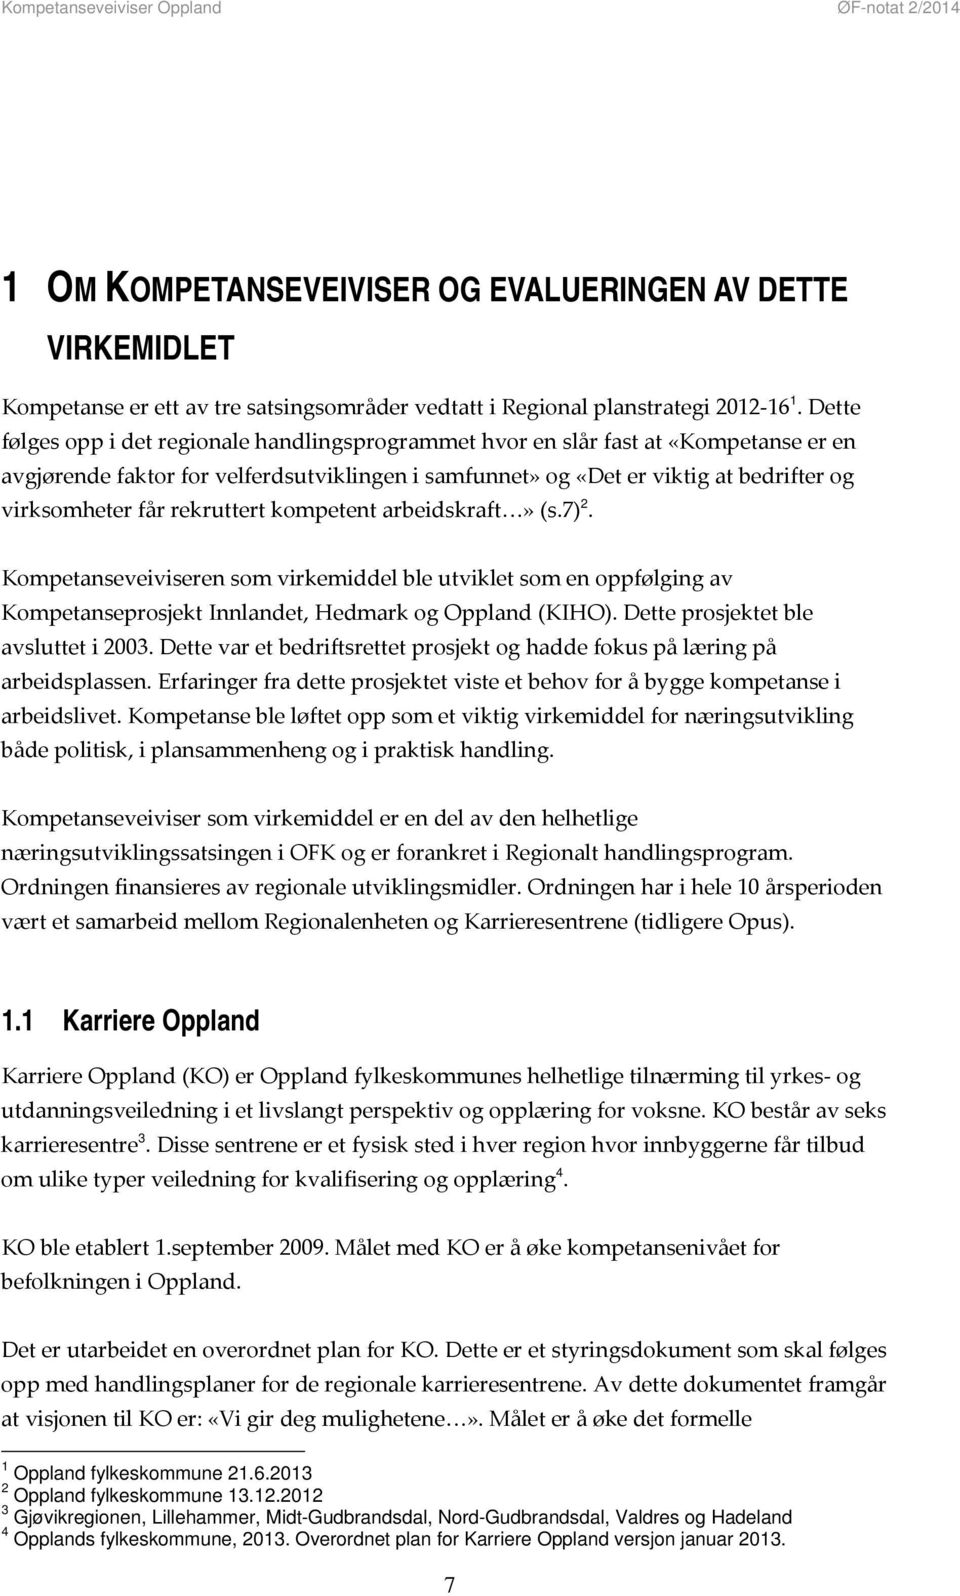 rekruttert kompetent arbeidskraft» (s.7) 2. Kompetanseveiviseren som virkemiddel ble utviklet som en oppfølging av Kompetanseprosjekt Innlandet, Hedmark og Oppland (KIHO).